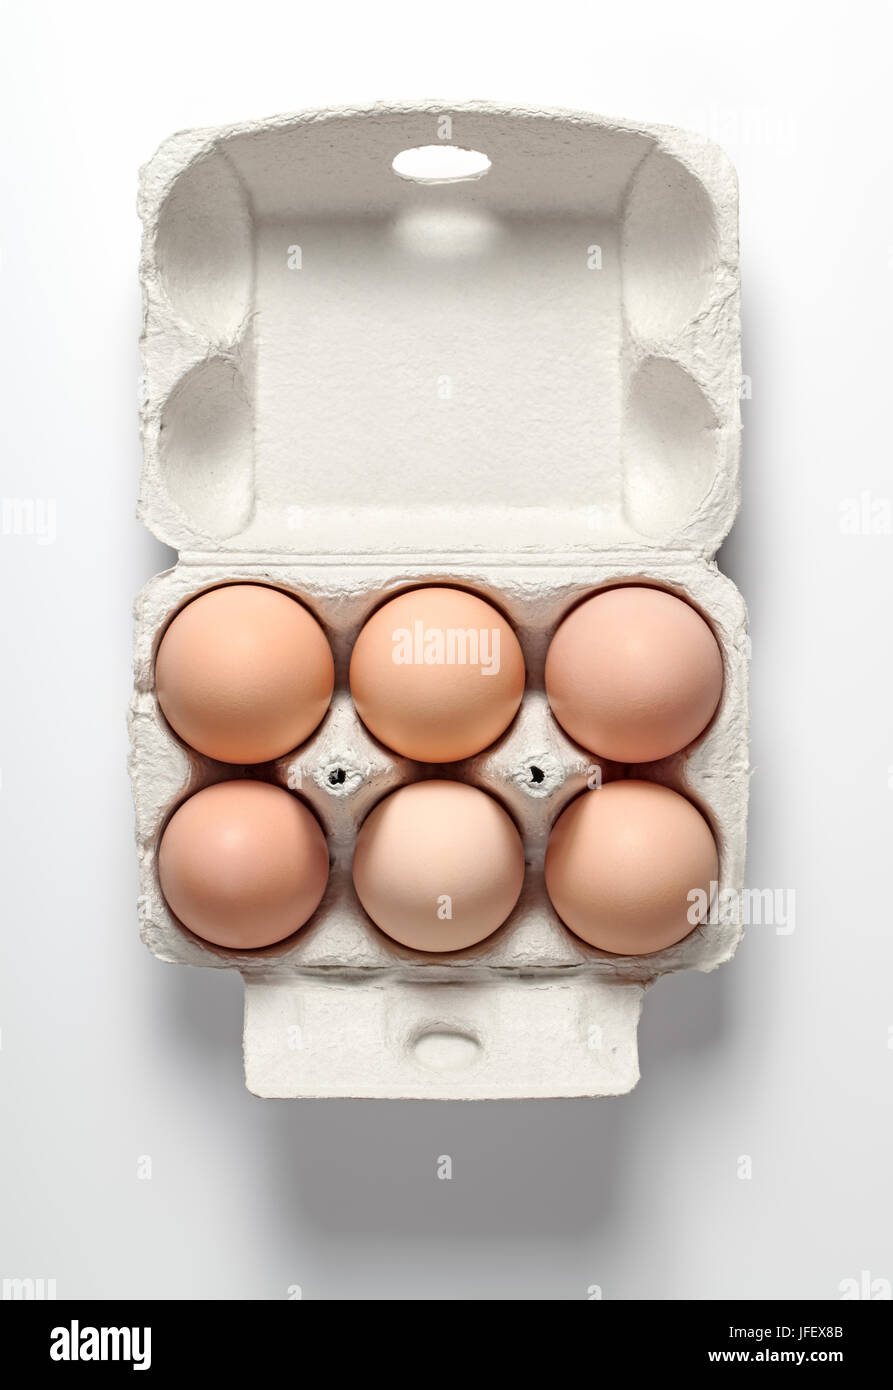 Le uova di gallina in contenitore Foto Stock